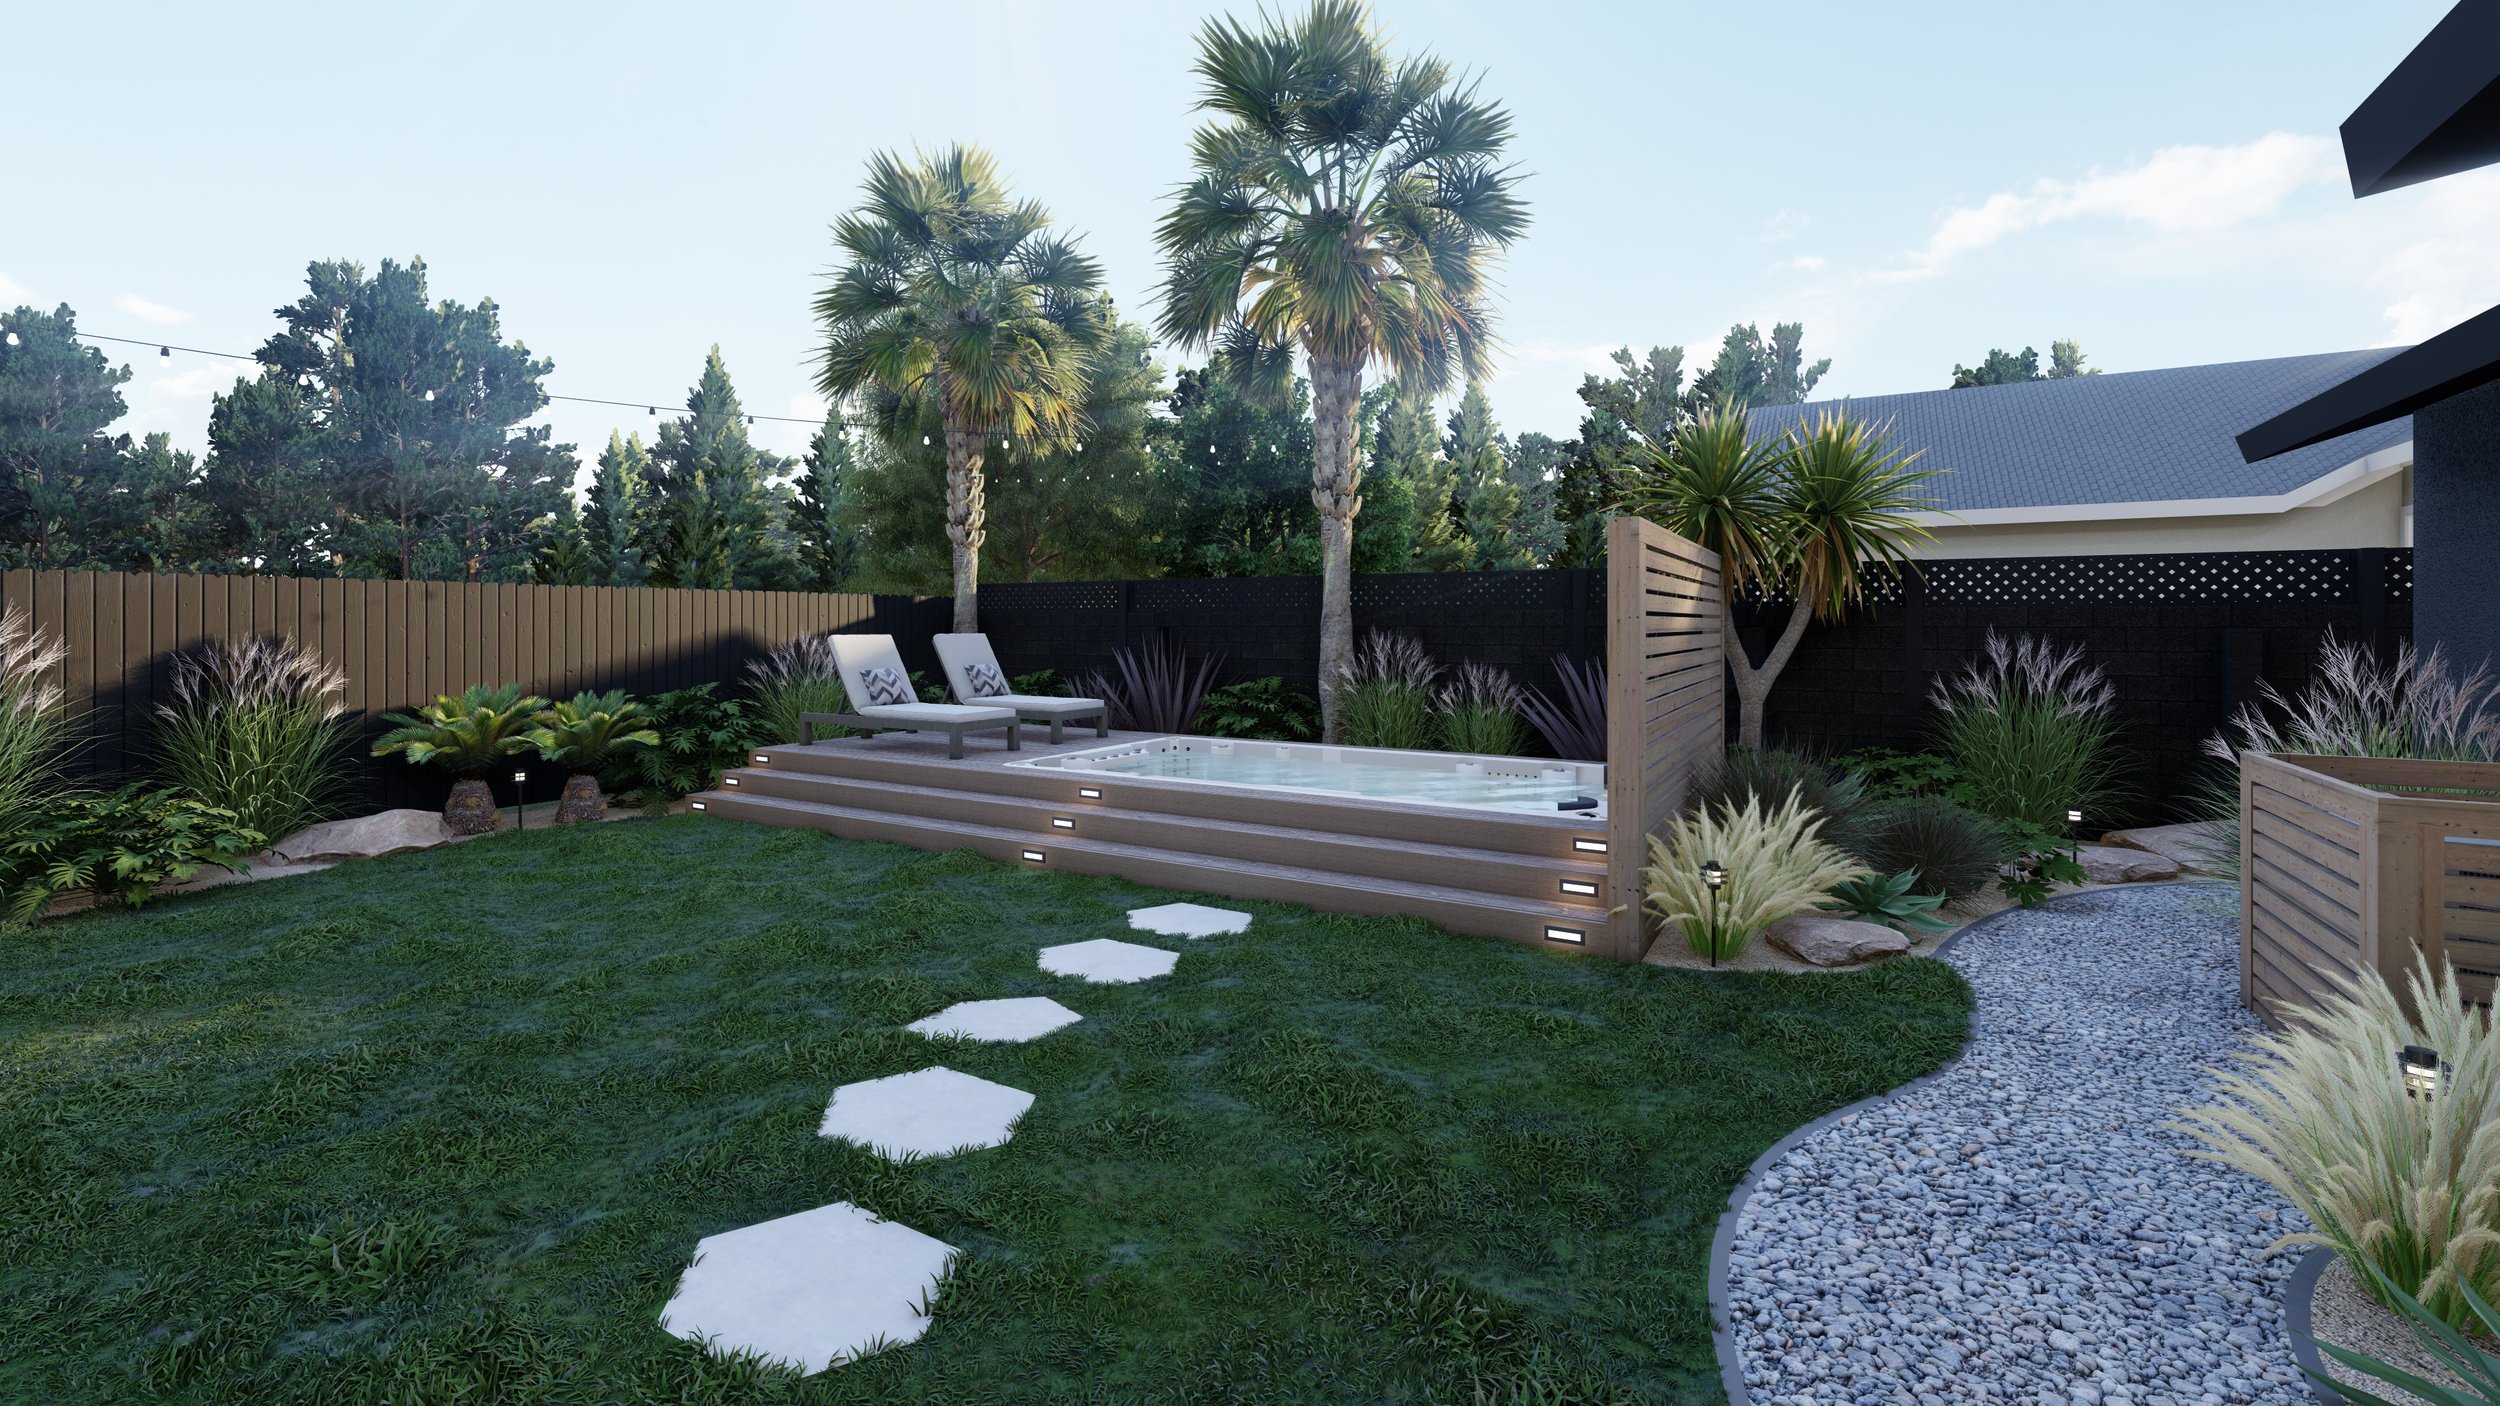 后院草坪与天然石材小径通往复合甲板环绕的跳水池